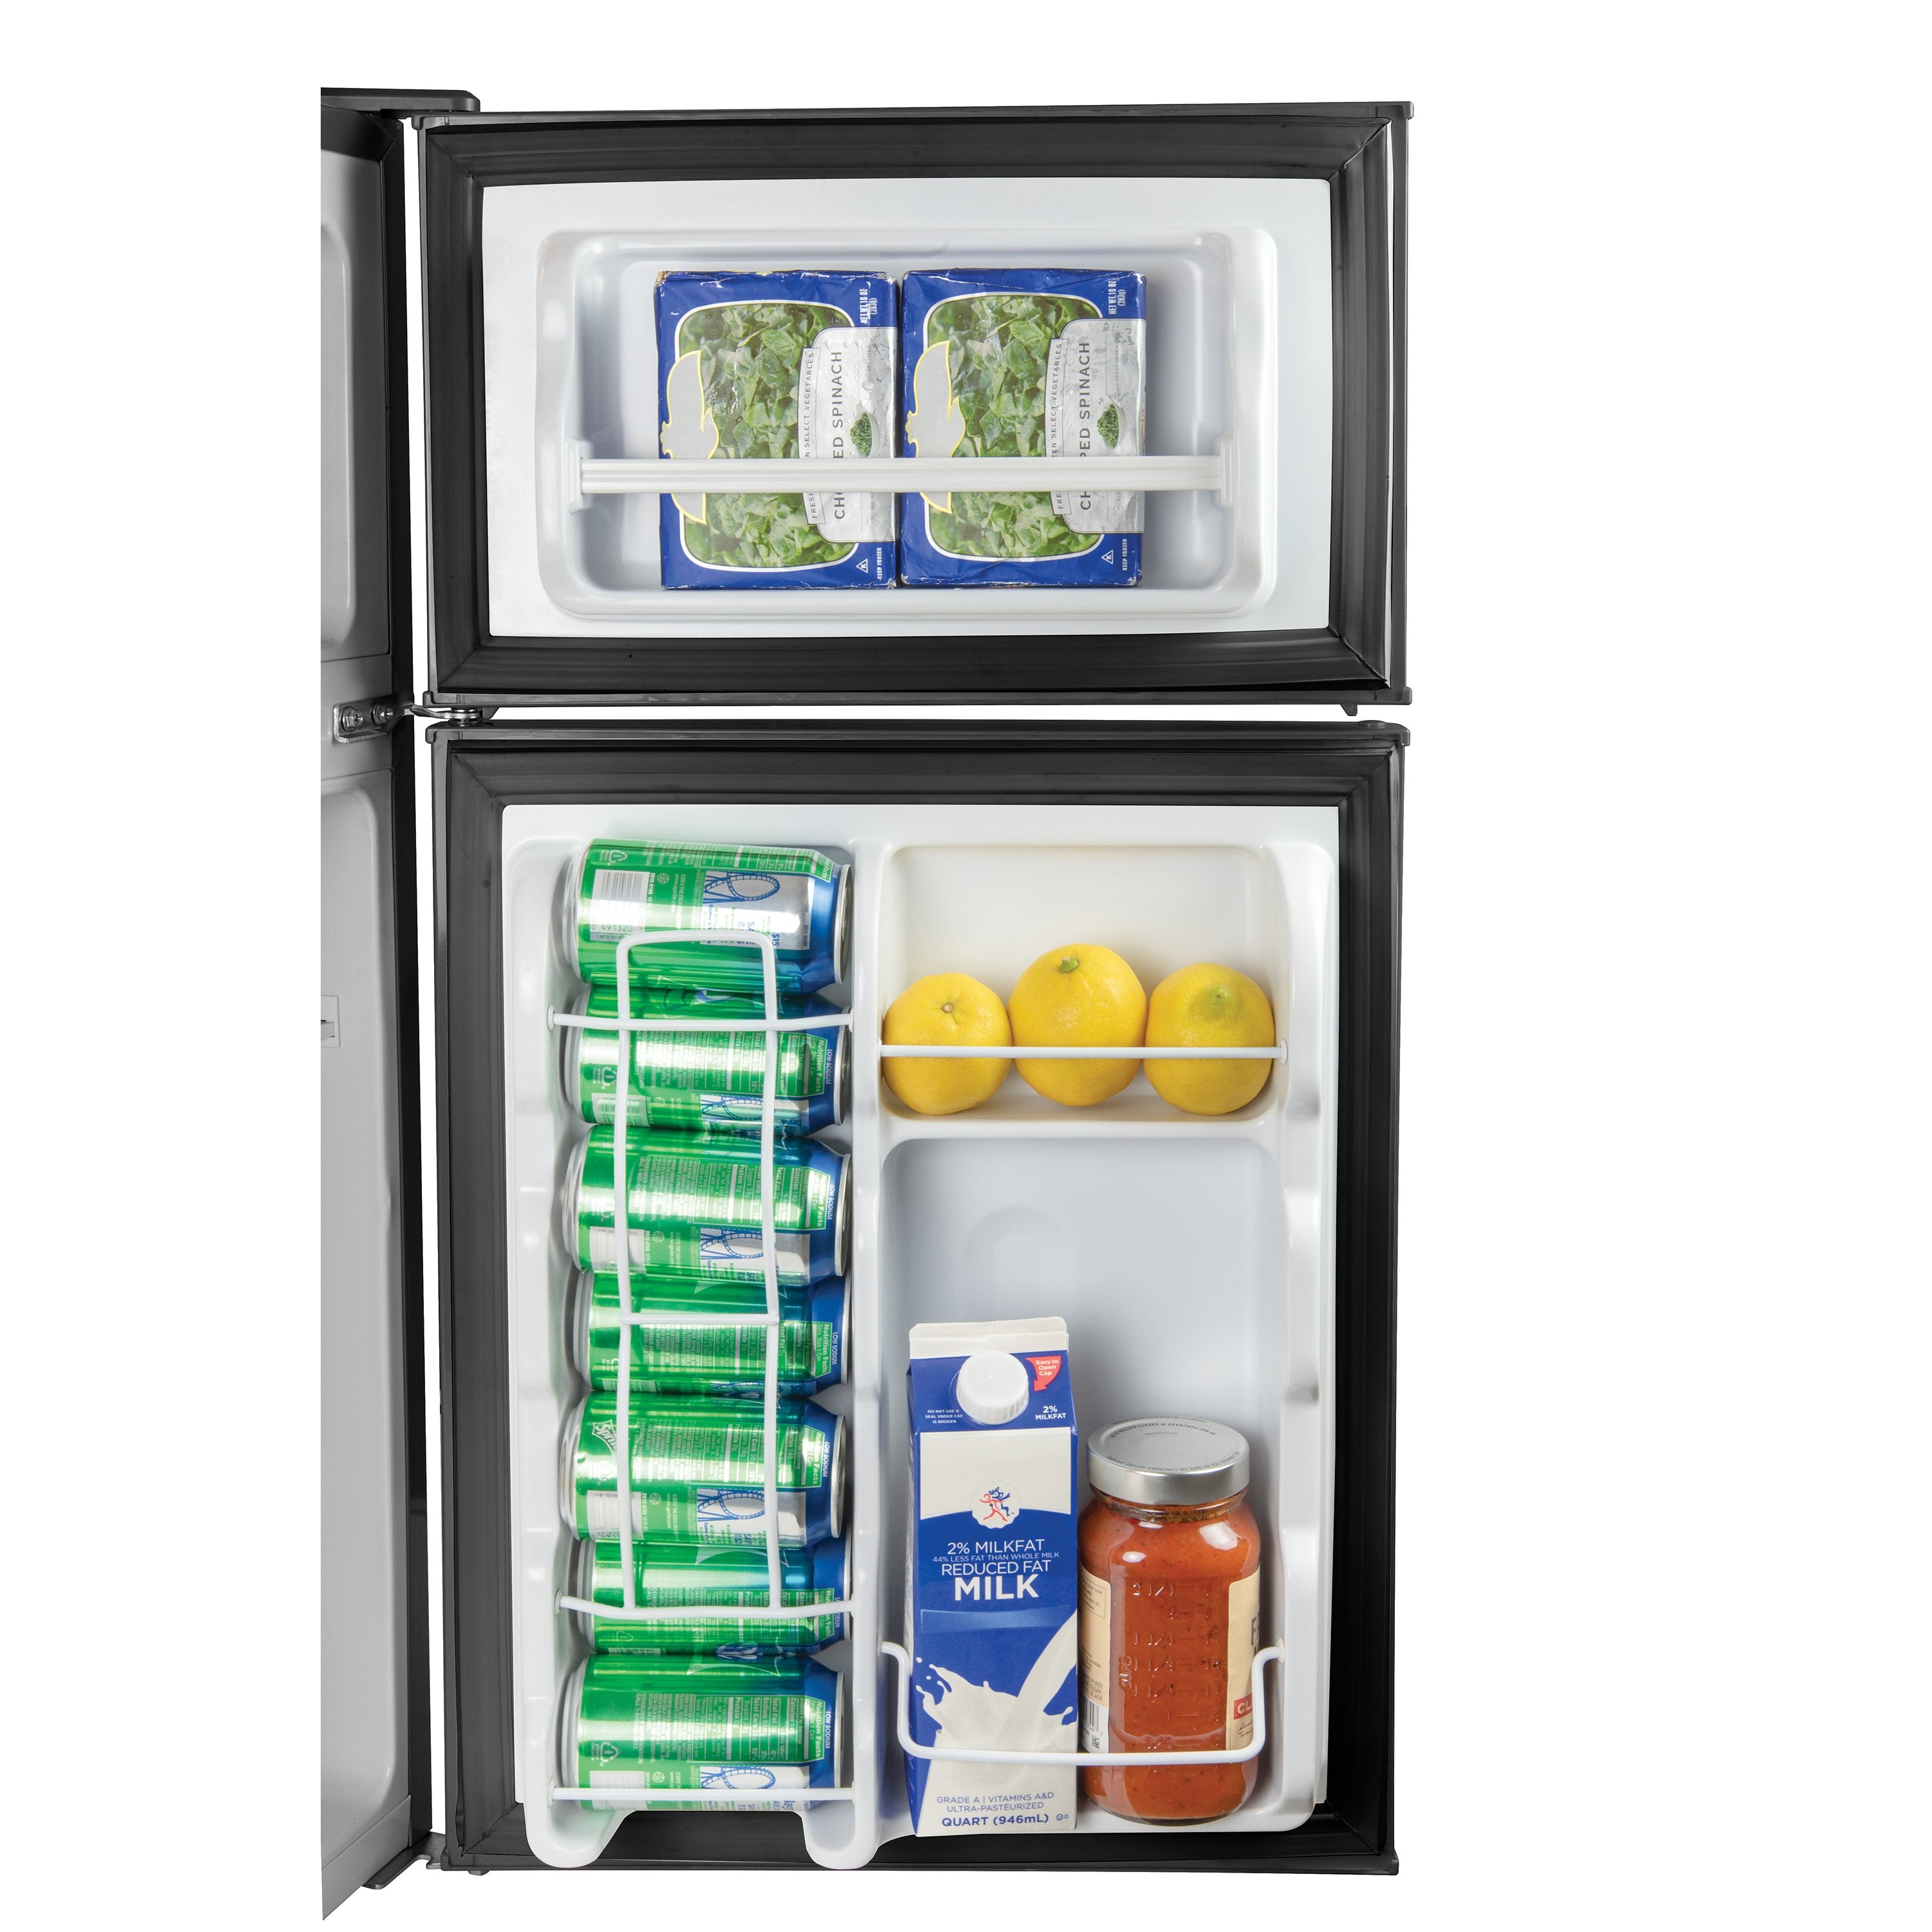 Igloo? 3.2 Cu. Ft. Double Door Refrigerator With Freezer, Black